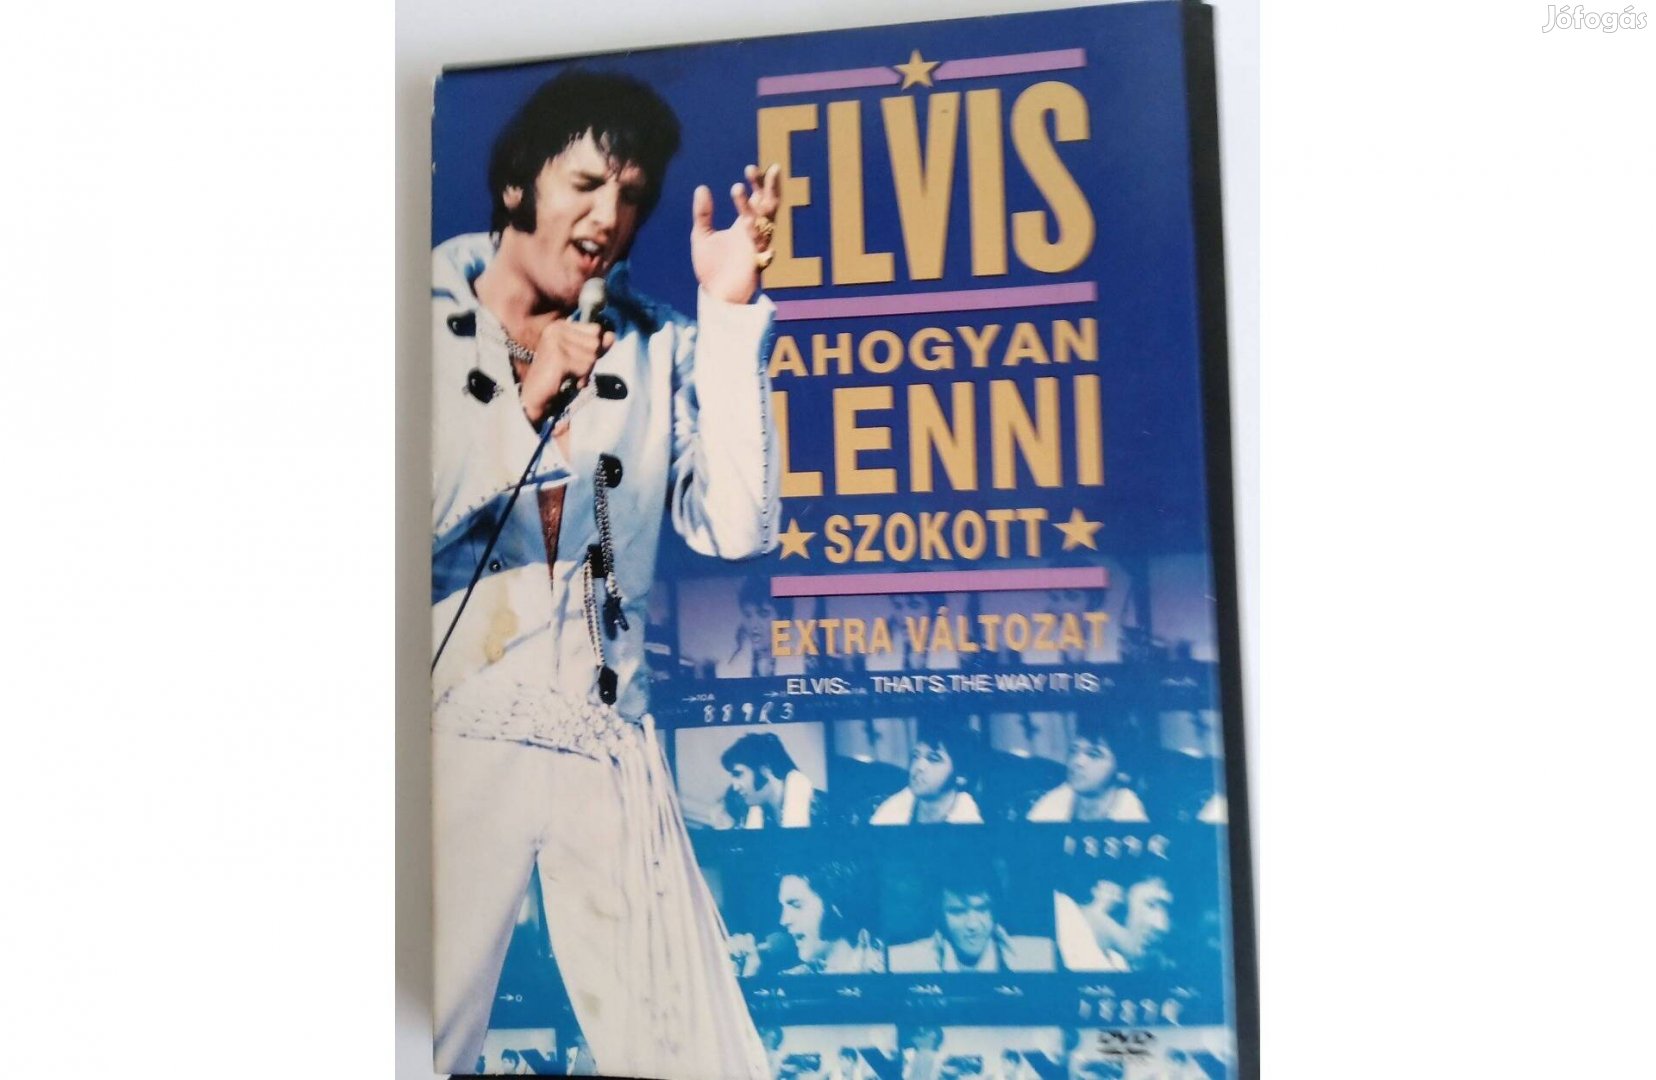 Elvis: Ahogyan lenni szokott (extra változat) DVD